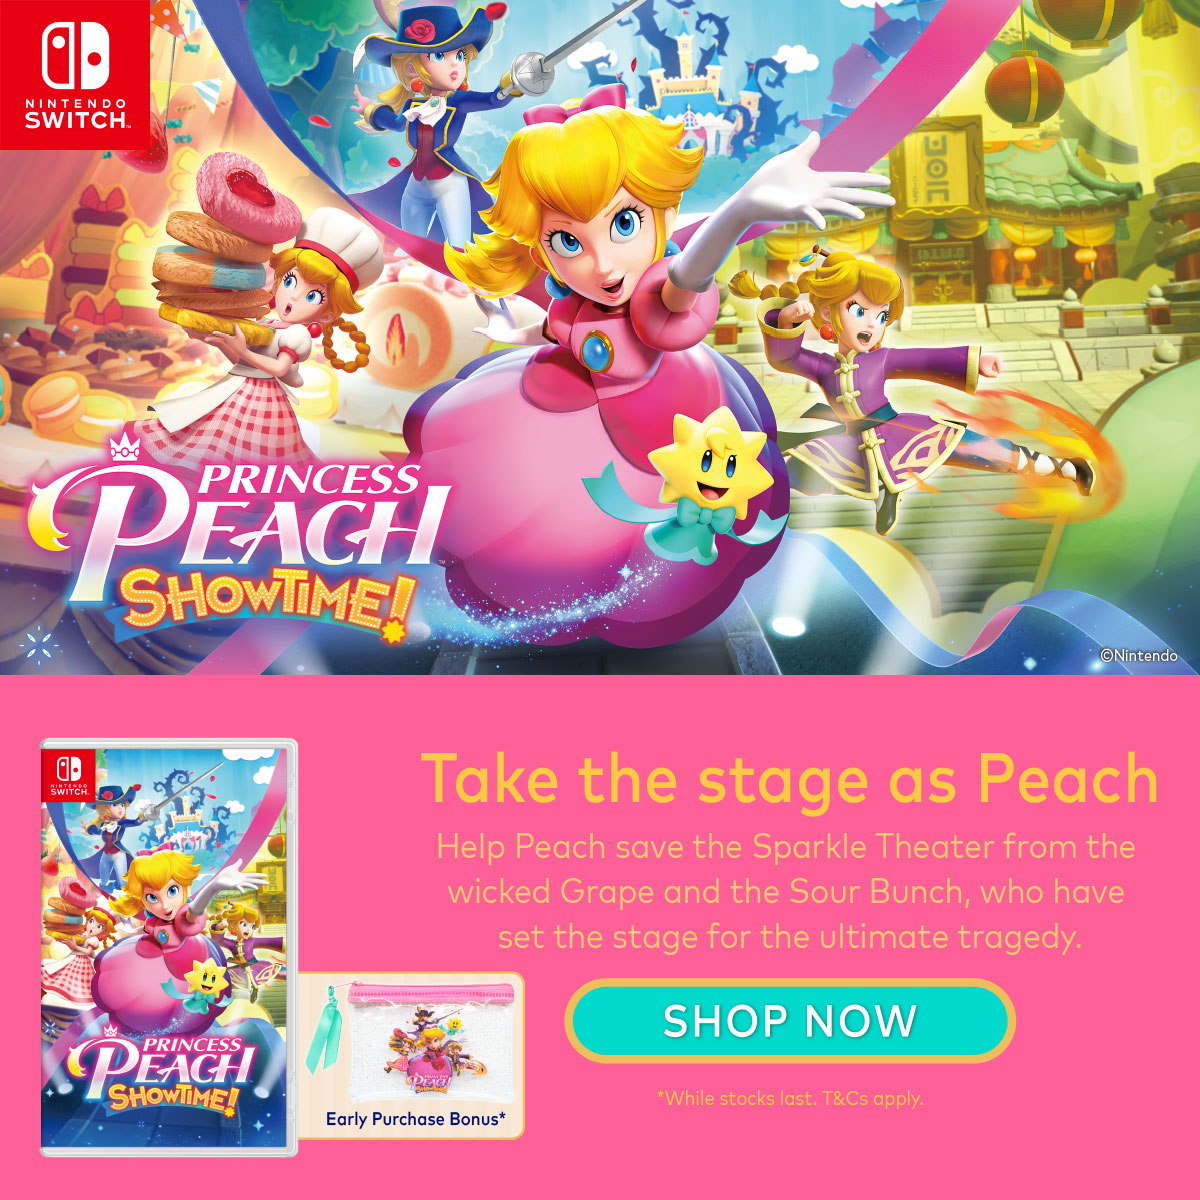 Nintendo Switch : Princess Peach: Showtime!